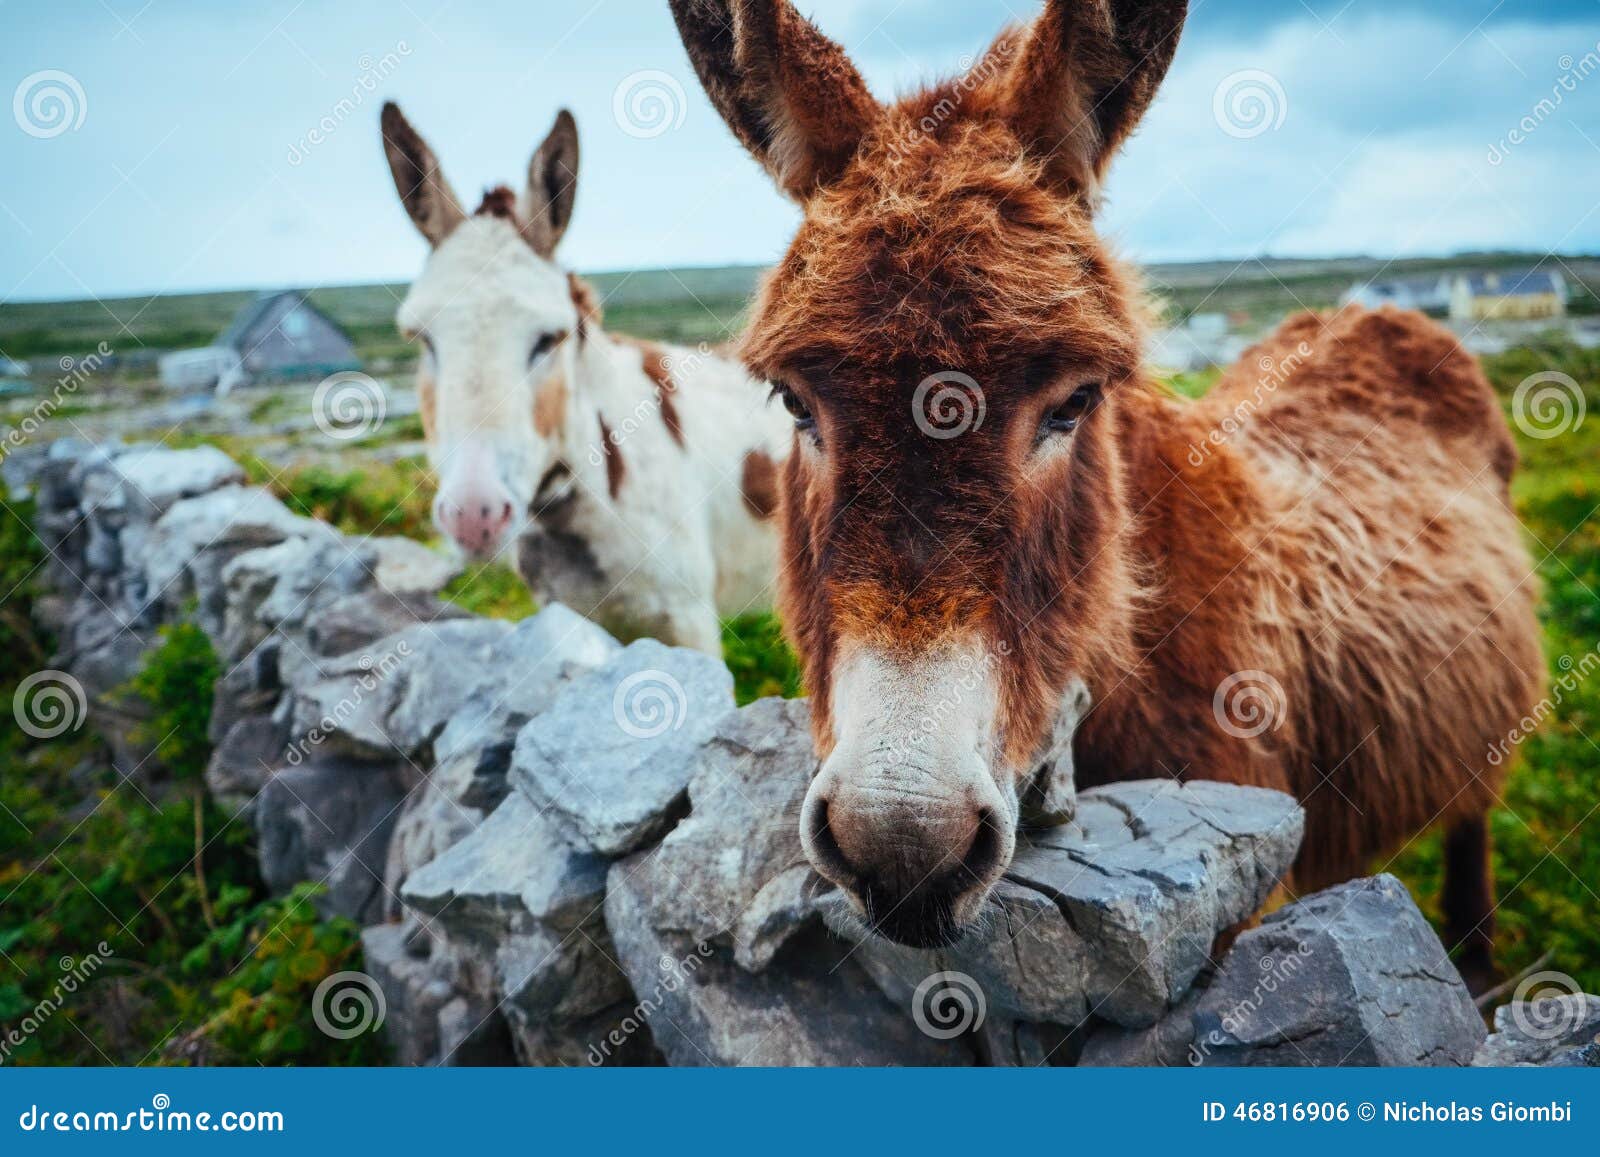 donkeys in aran islands, ireland